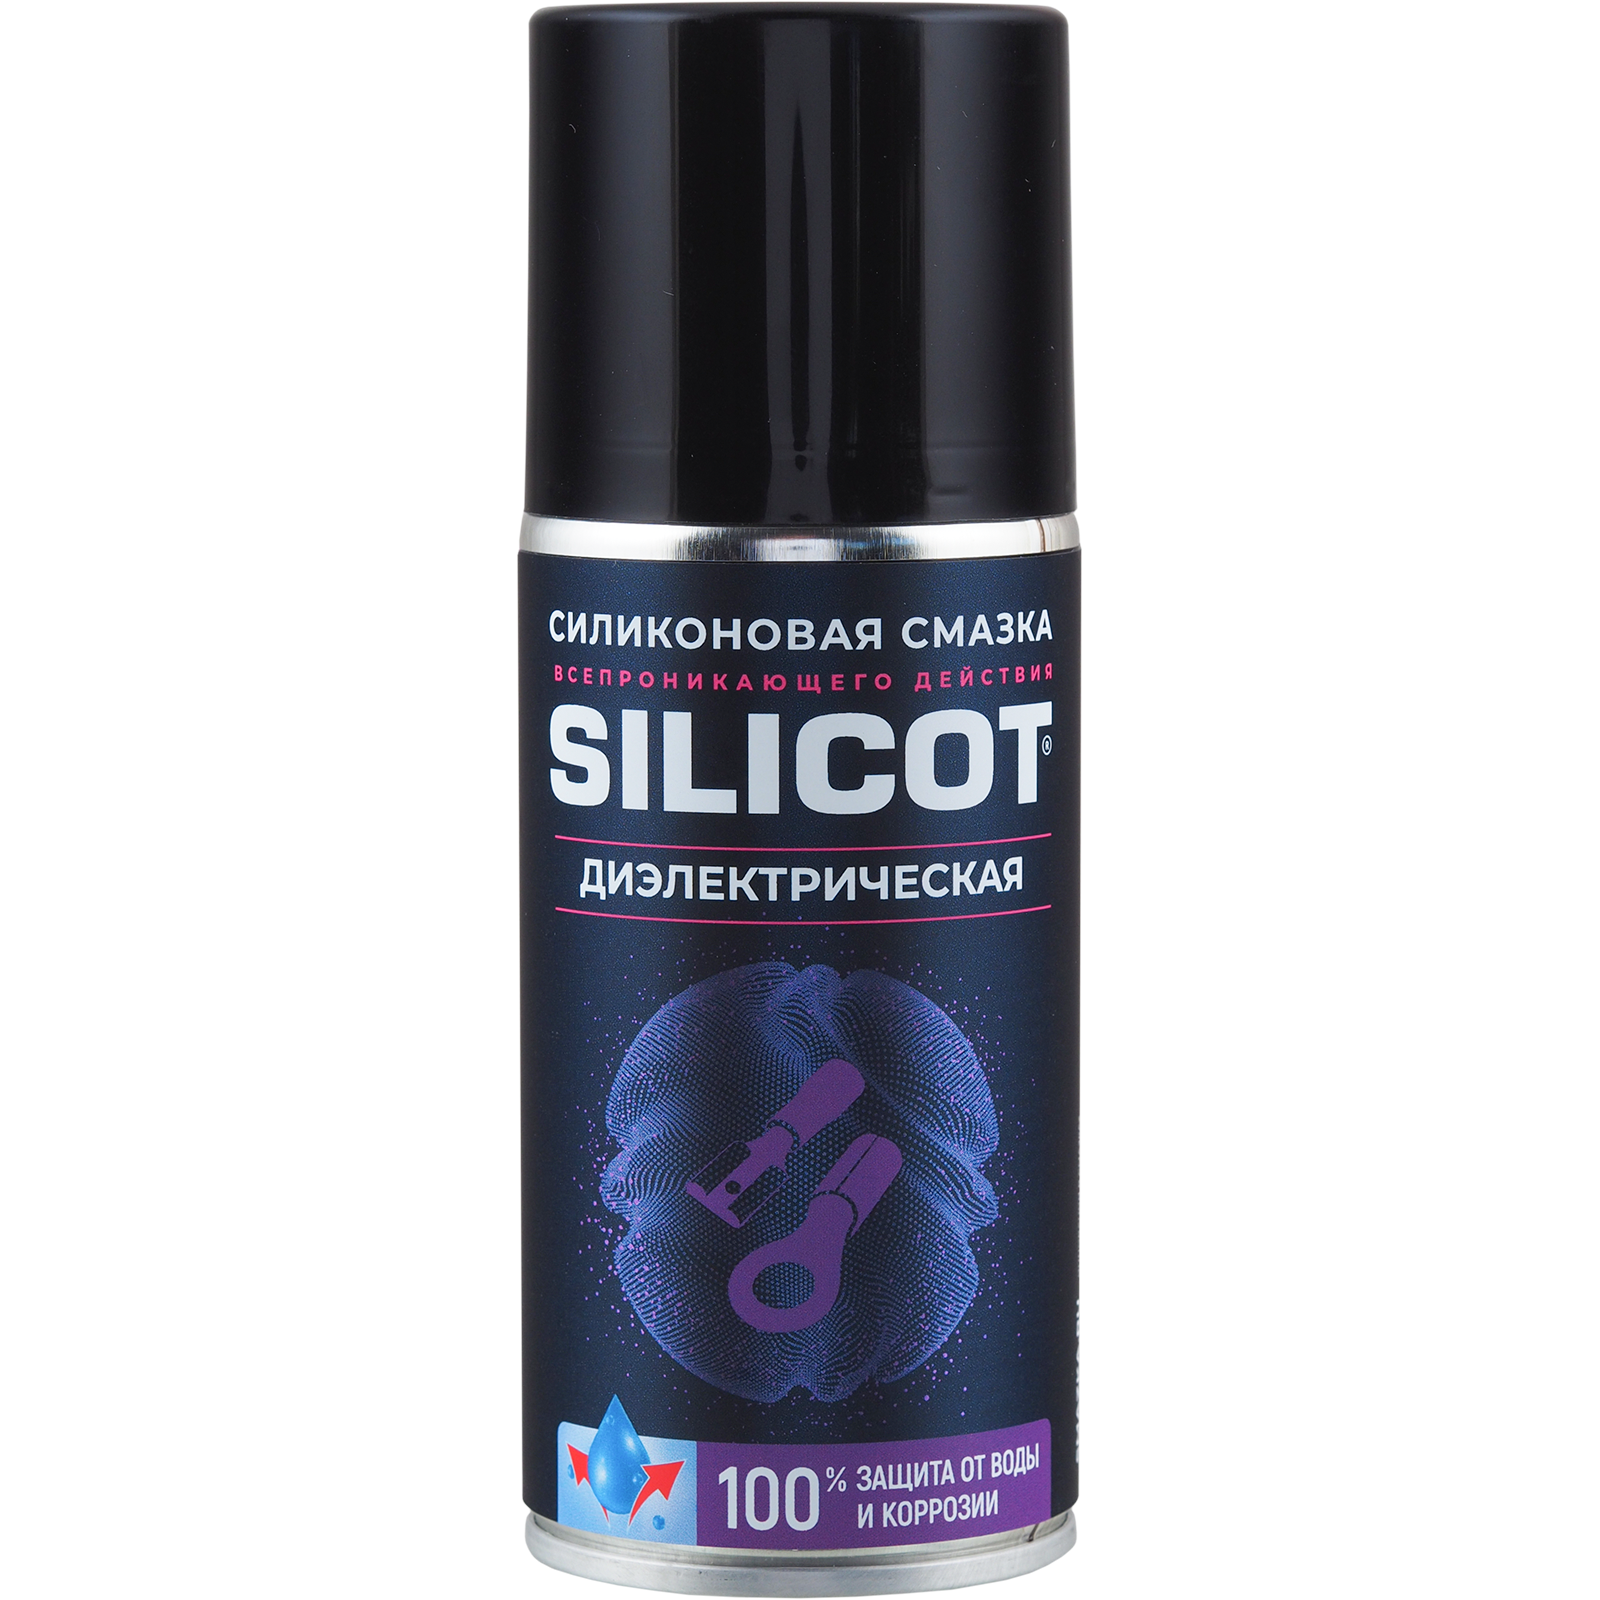 Смазка-аэрозоль диэлектрическая для защиты электрики Silicot Spray, 150мл - ВМПАВТО 2707